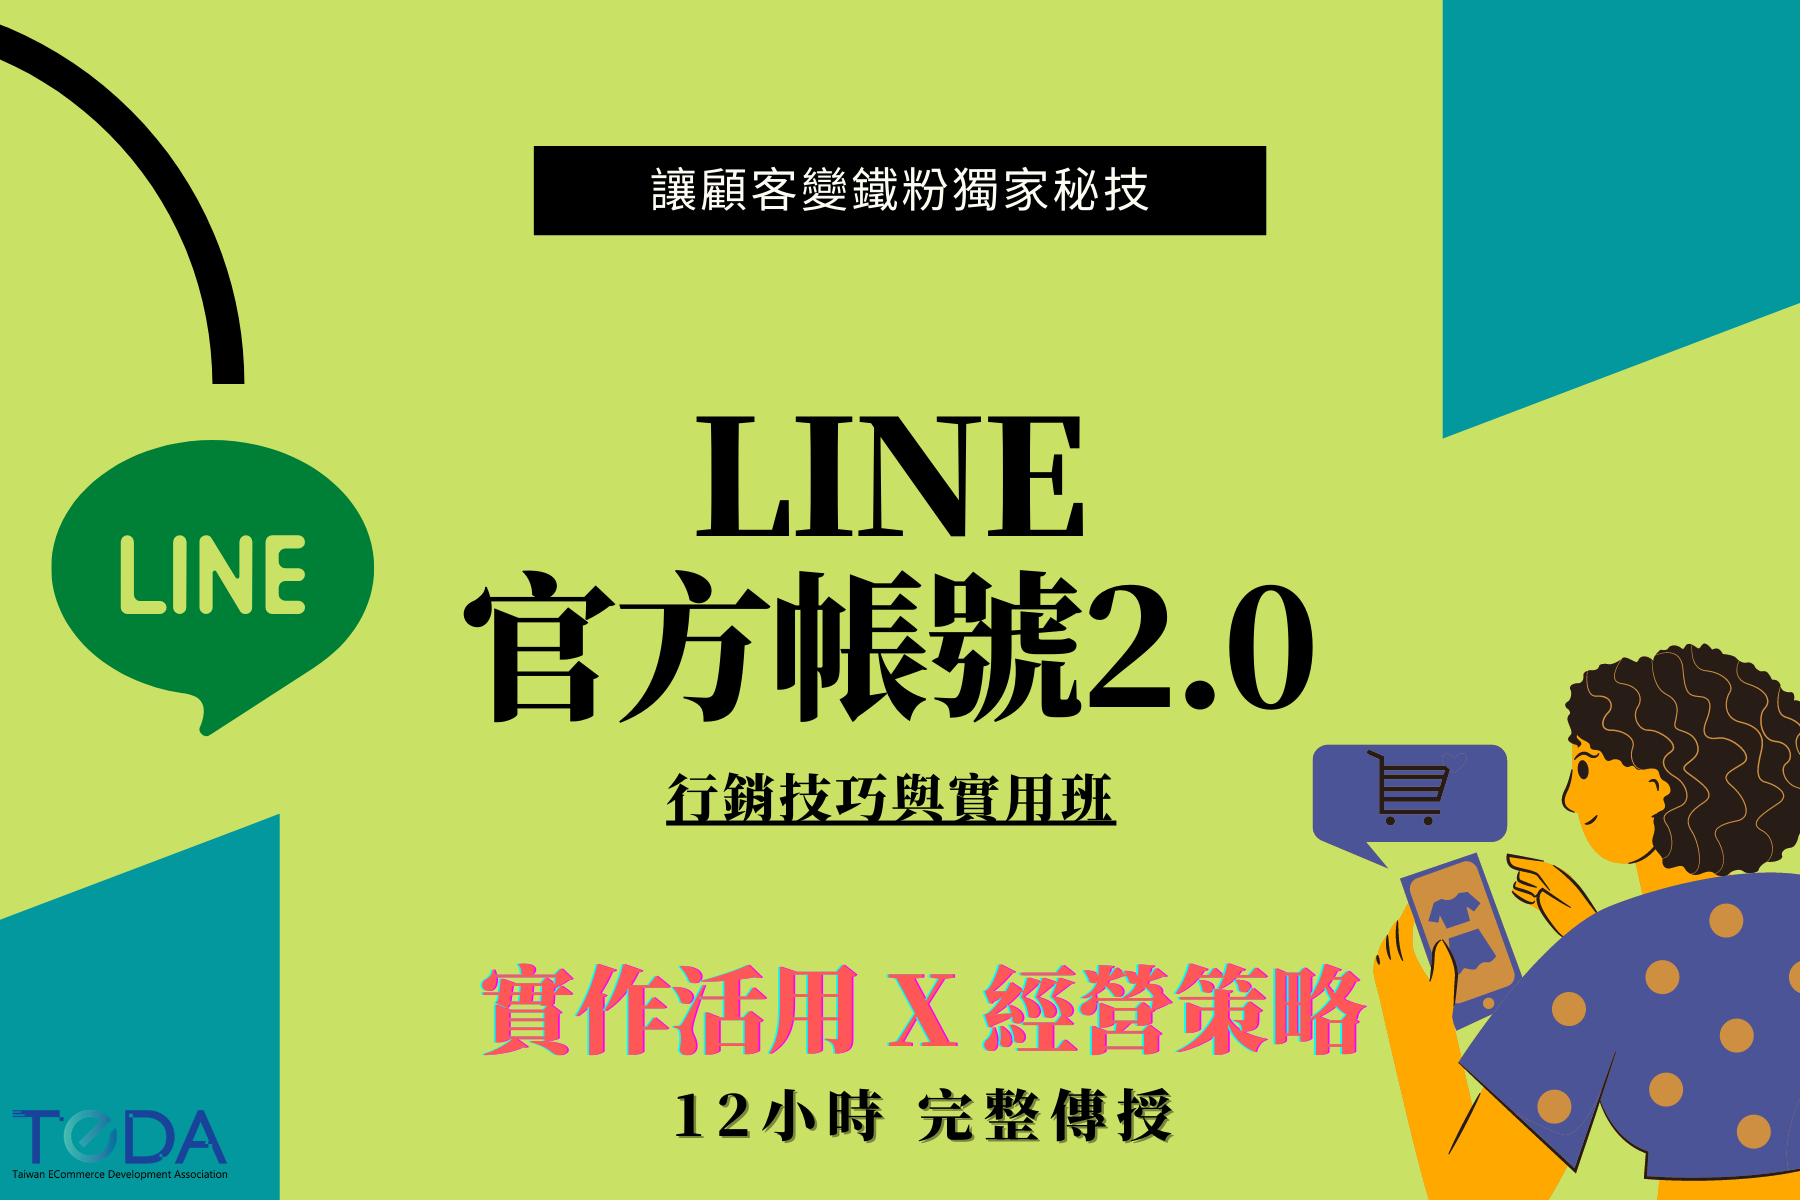 LINE2.0官方帳號課程